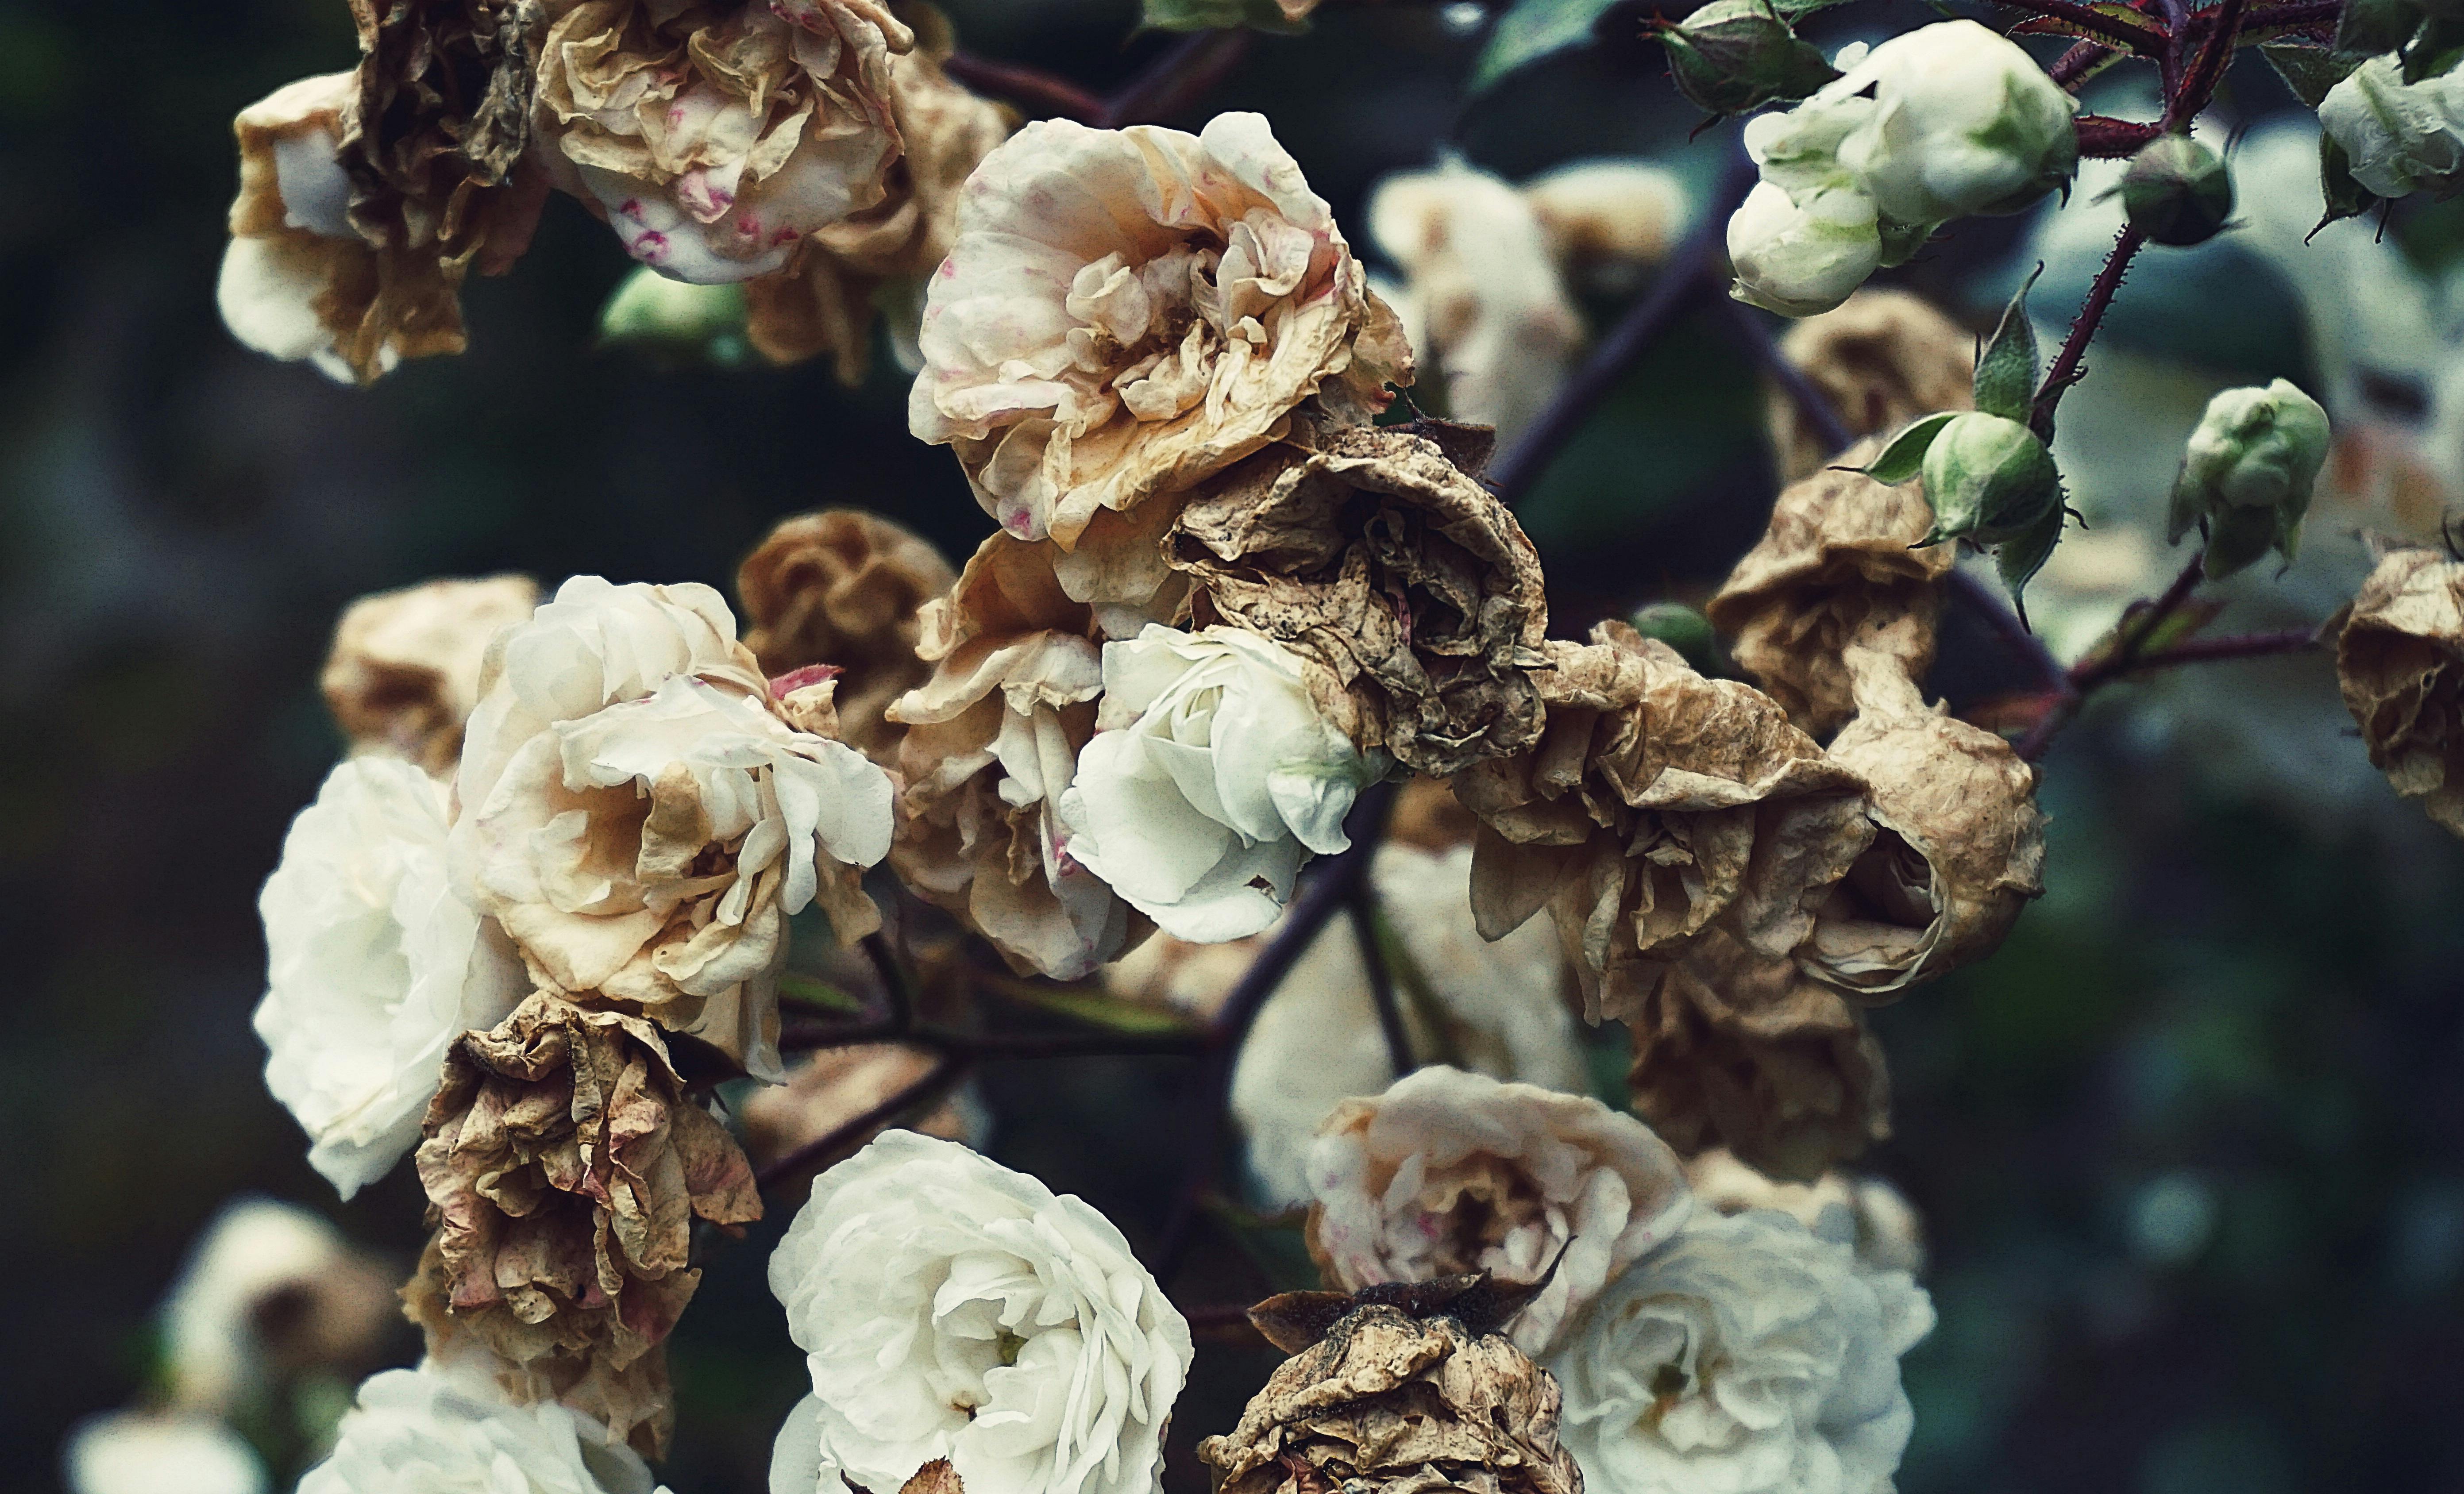 白色和棕色花瓣的花朵特寫攝影 免費圖庫相片